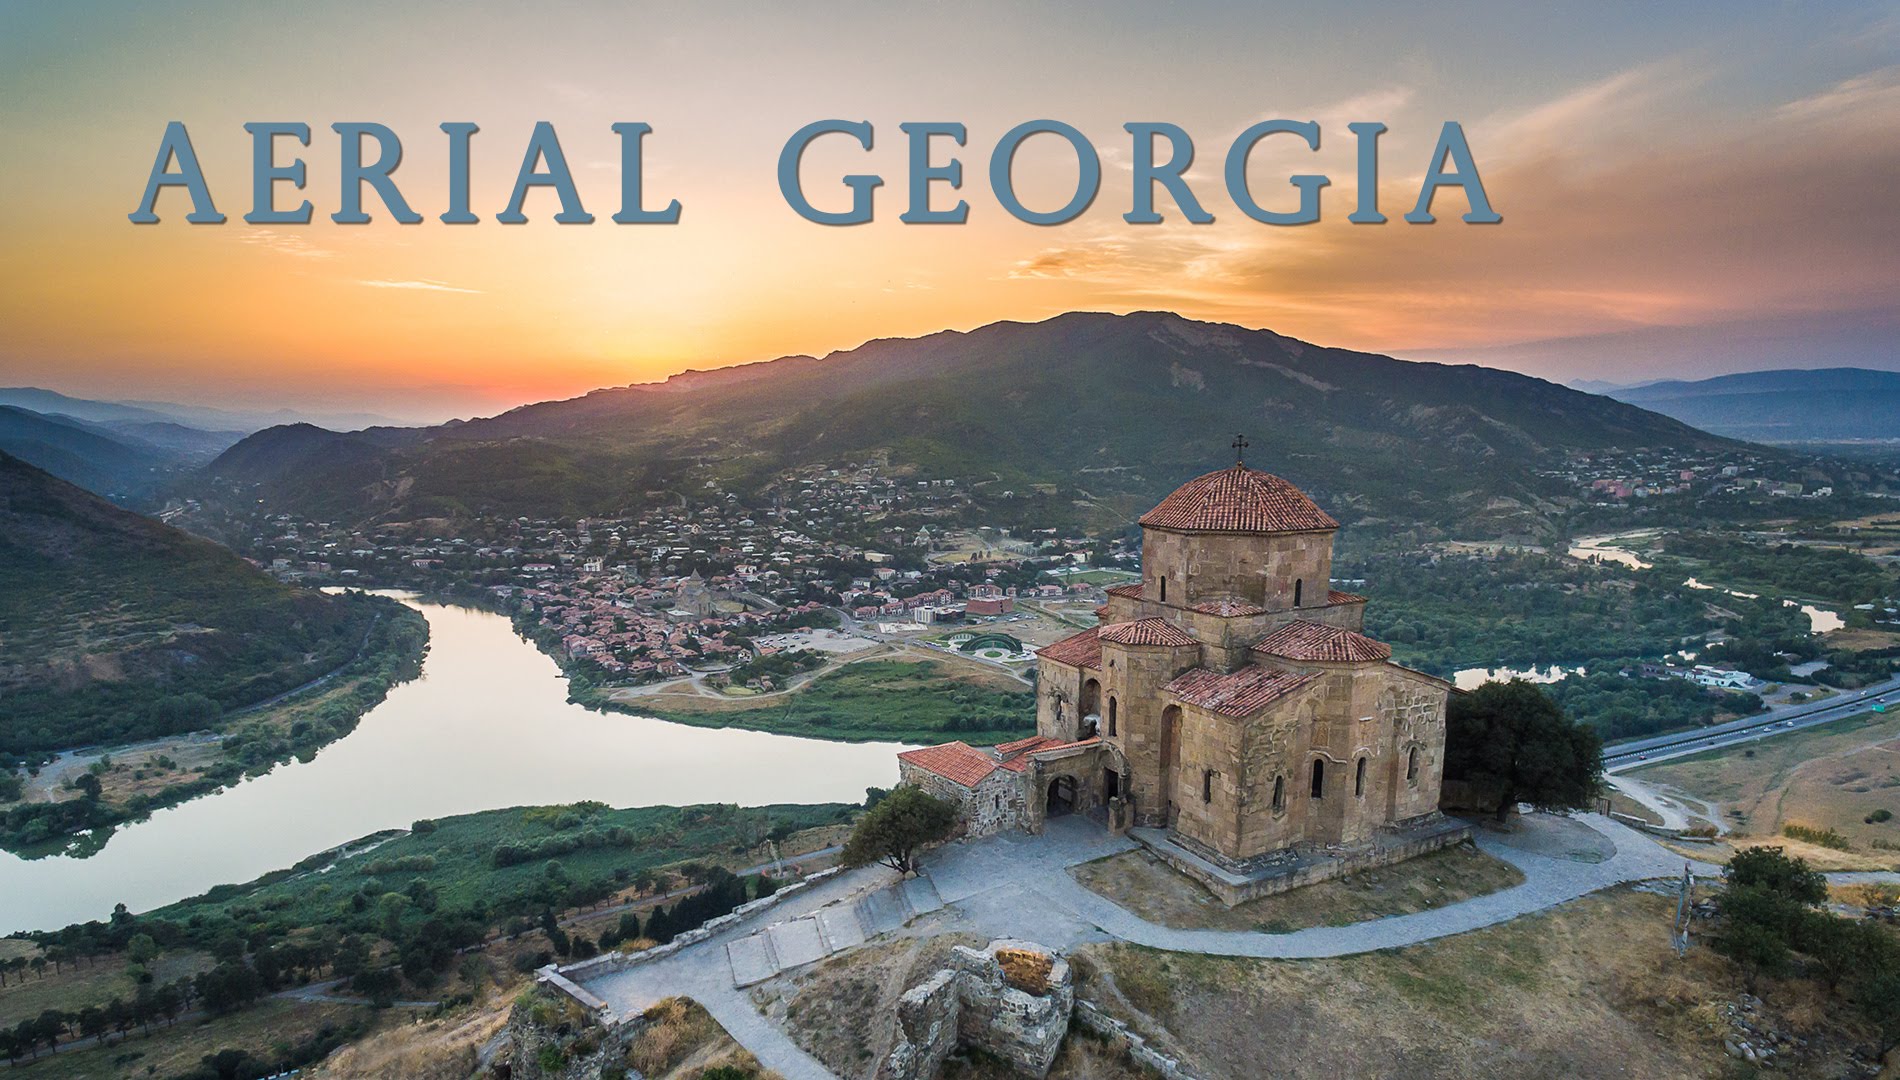 Aerial Georgia - YouTube